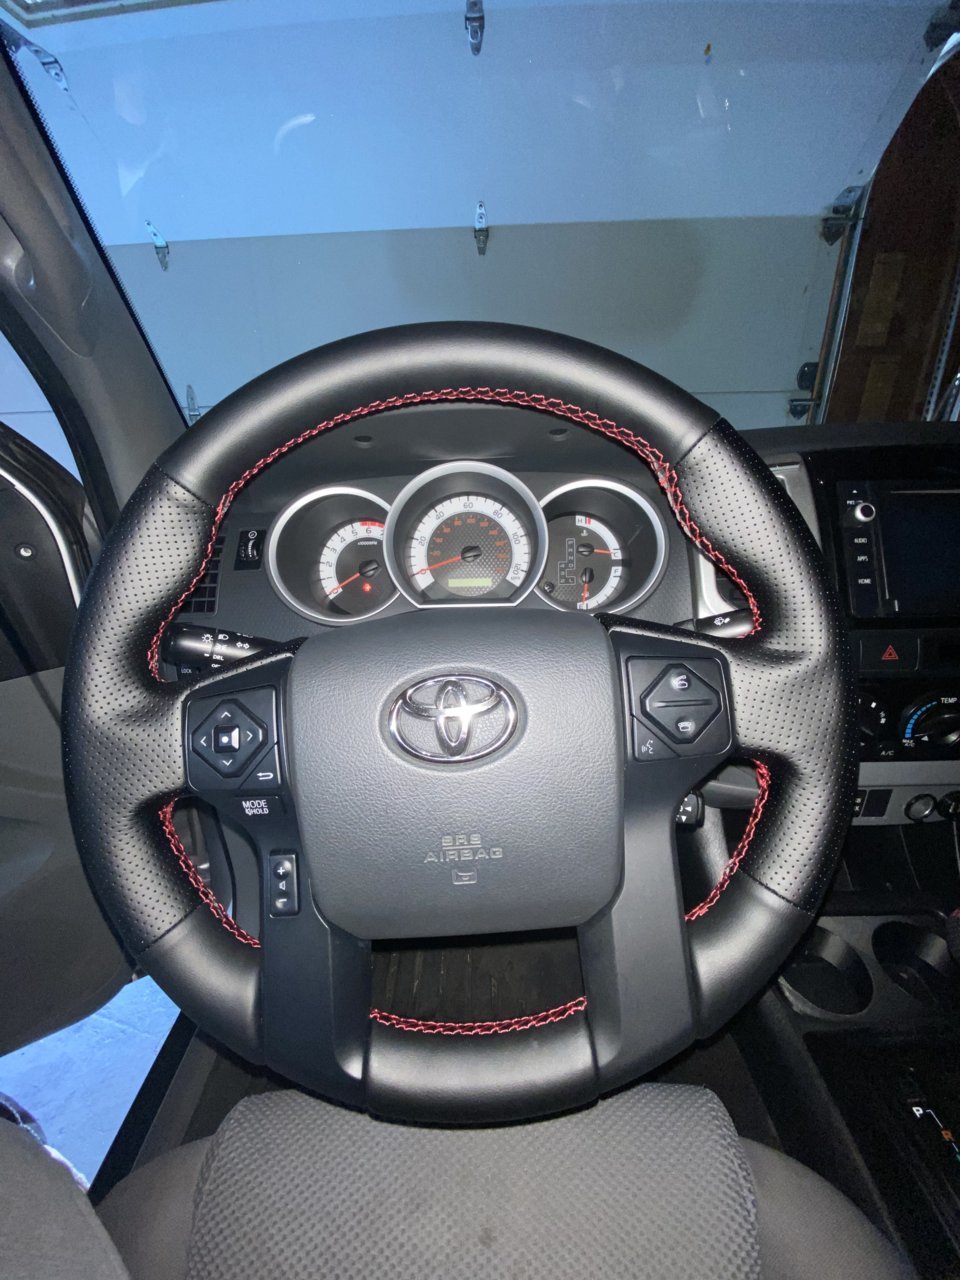 RAV4 steering wheel in 2014 Tacoma | Tacoma World